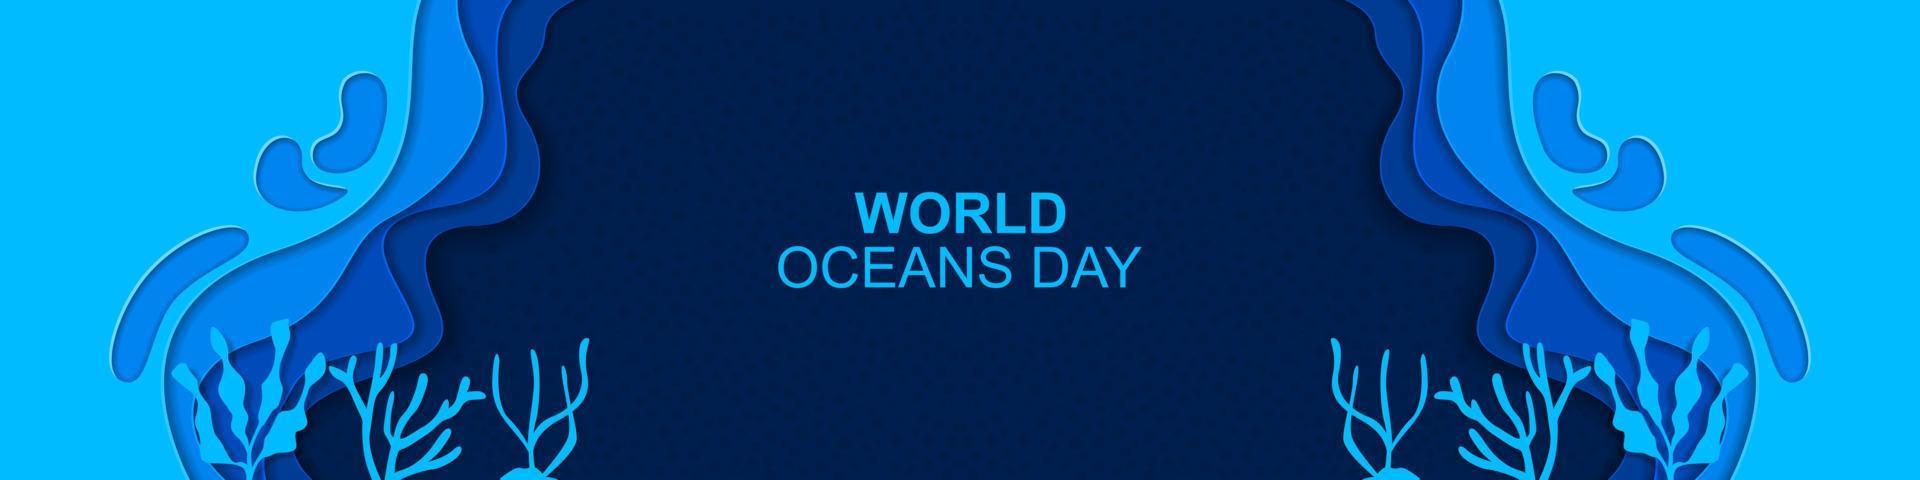 mondo oceani giorno bandiera subacqueo onda design con oceano, vettore illustrazione.